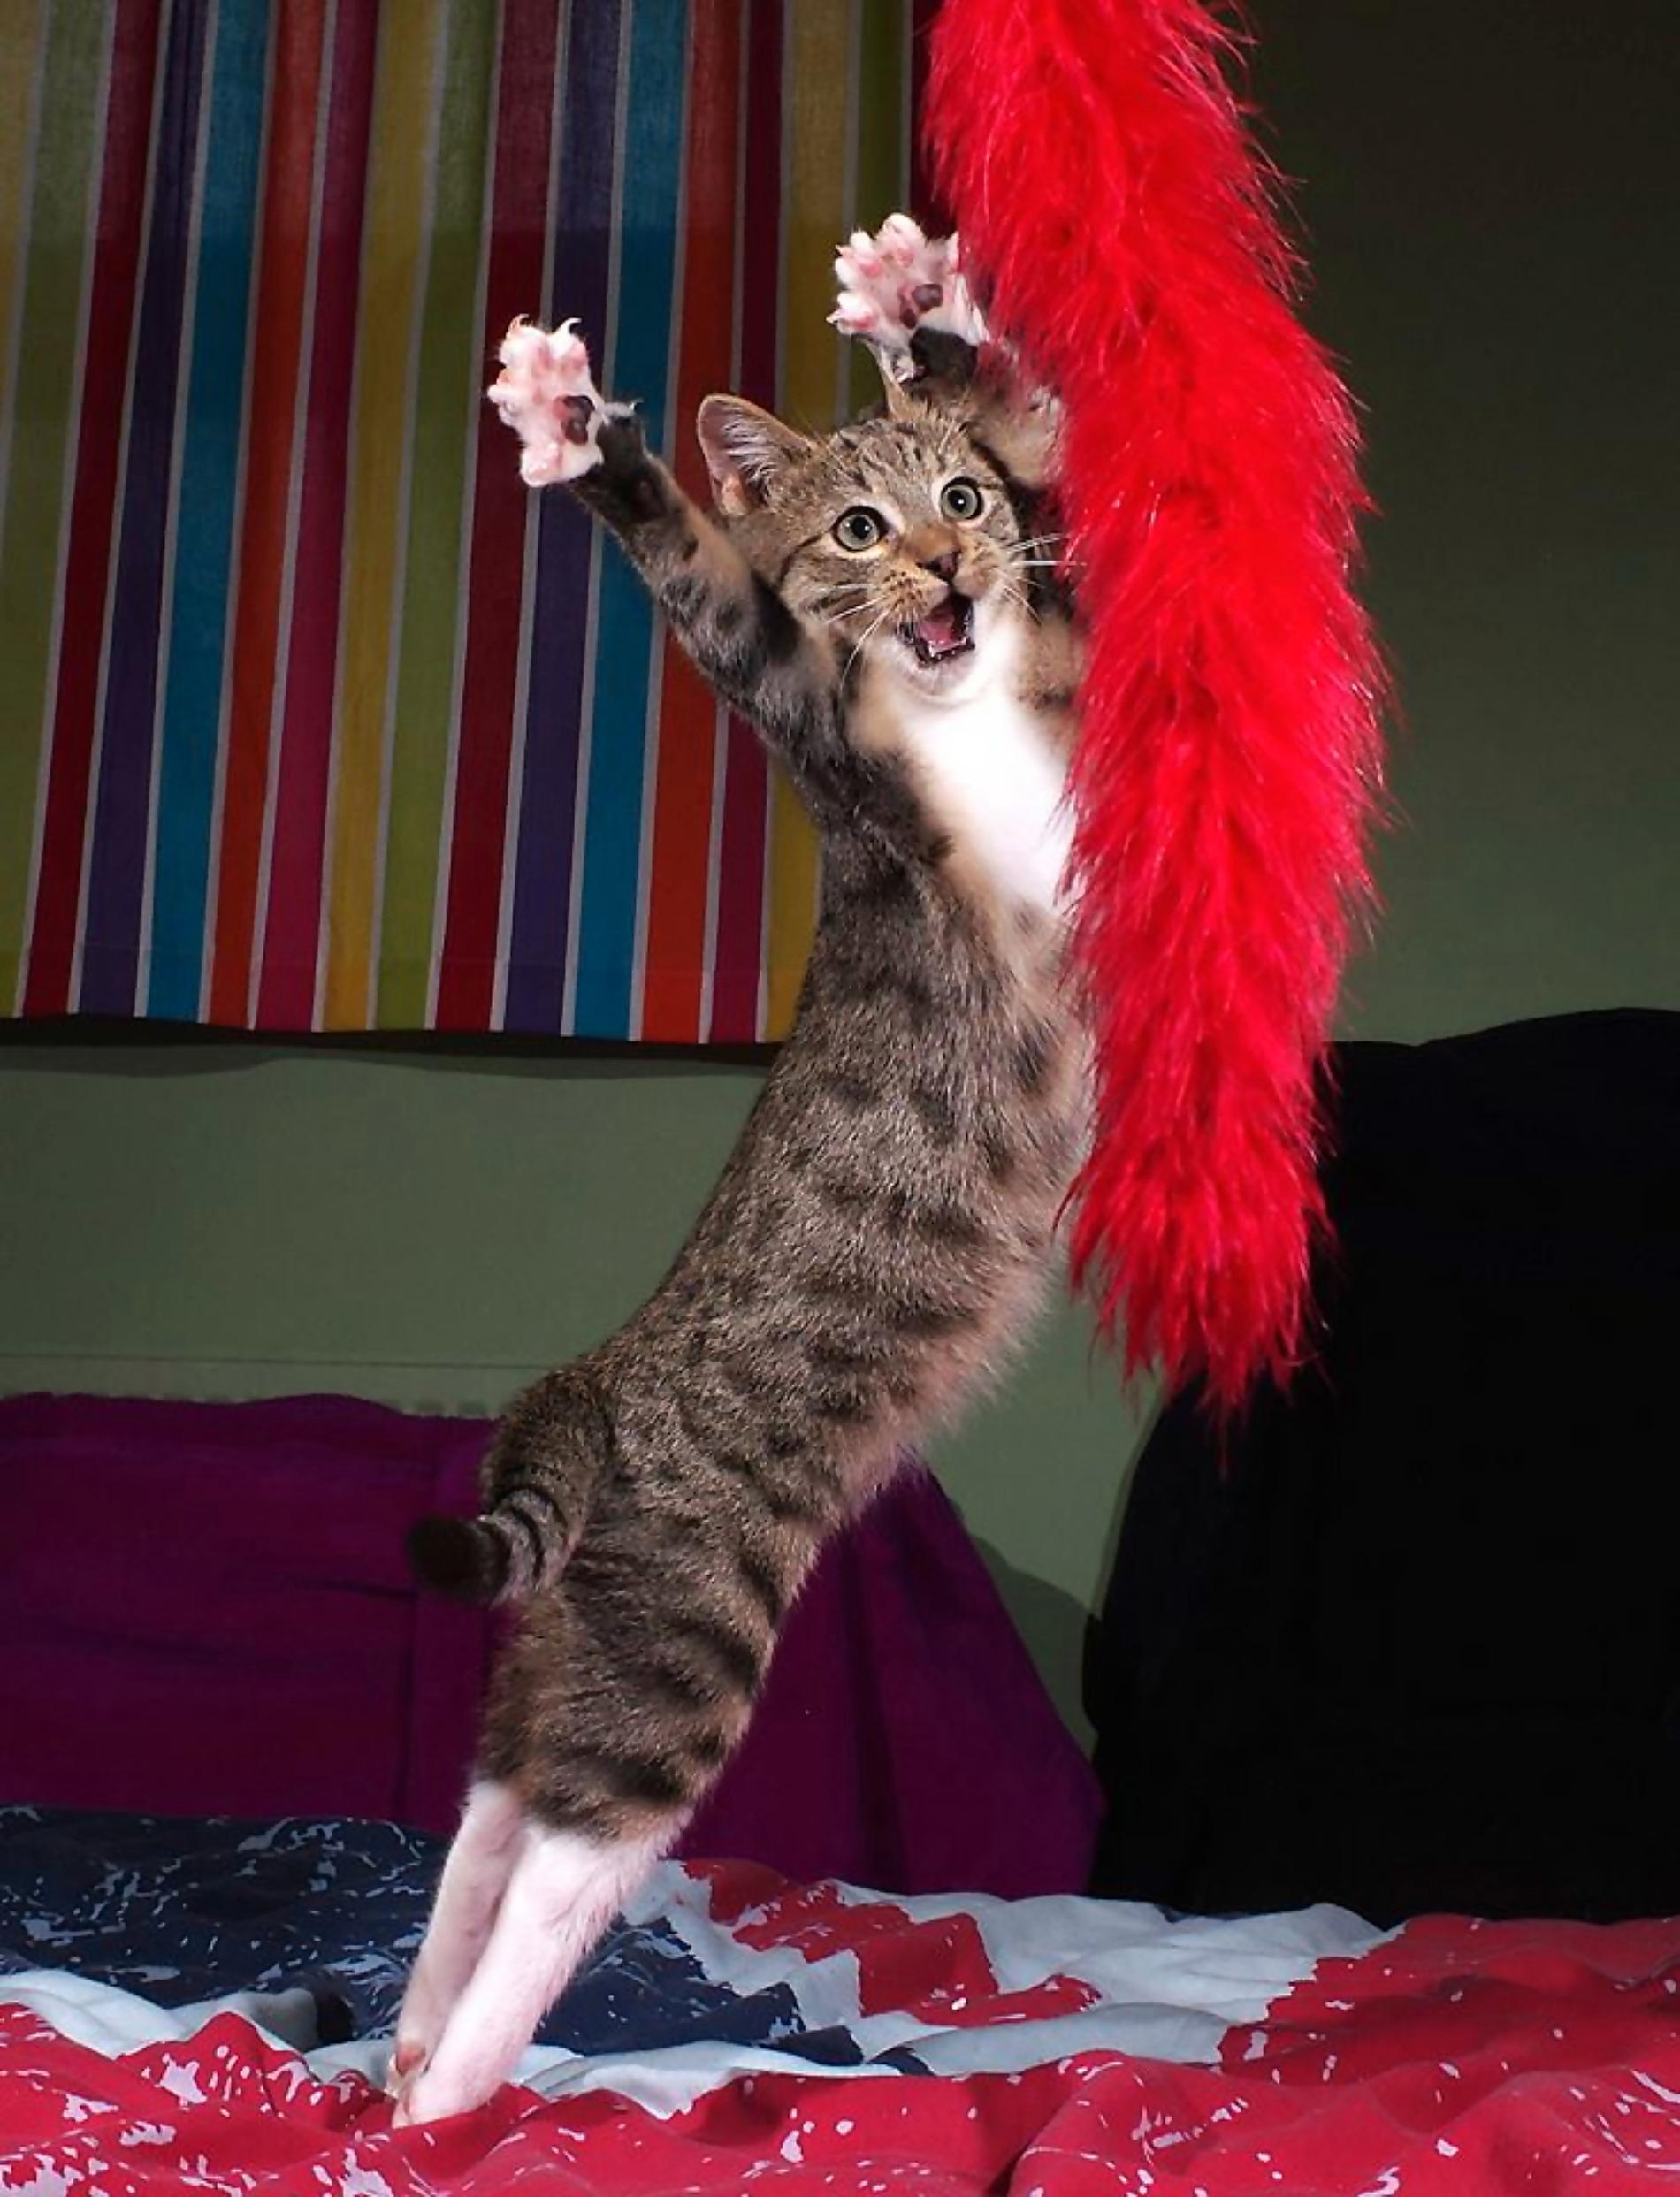 ”The Dancing Cat”